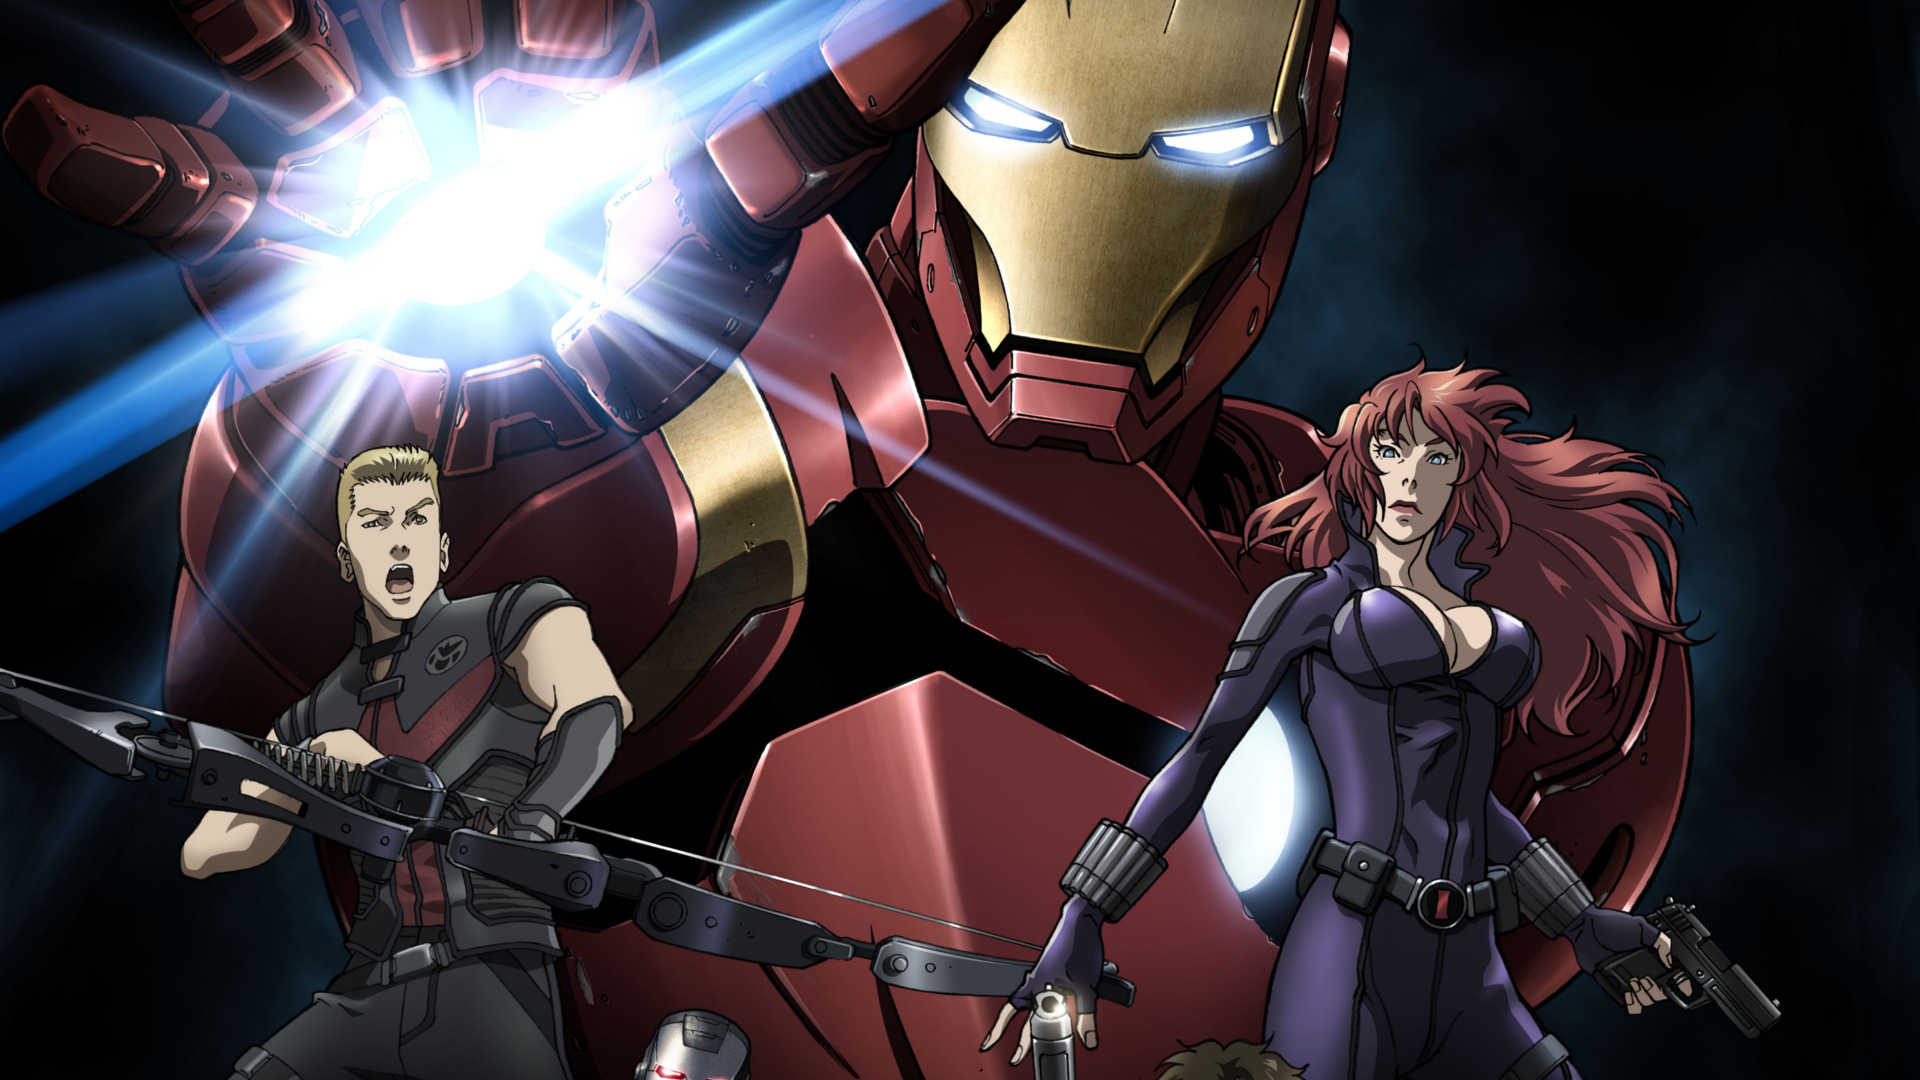 دانلود انیمه Iron Man: Rise of Technovore 2013